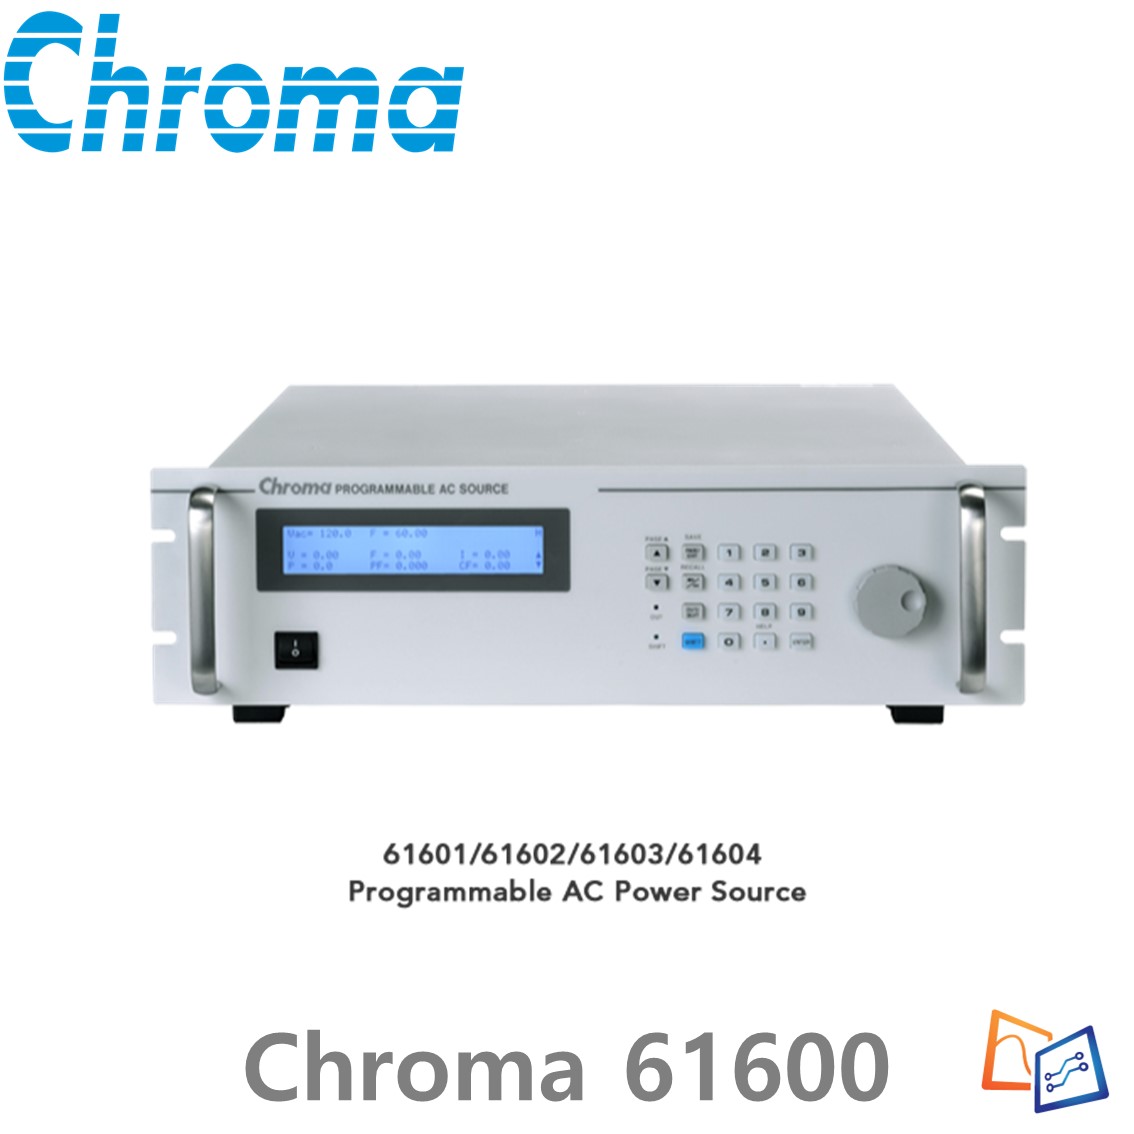 [ Chroma 61600 ] 프로그래머블 AC 전원 공급기 61600 series